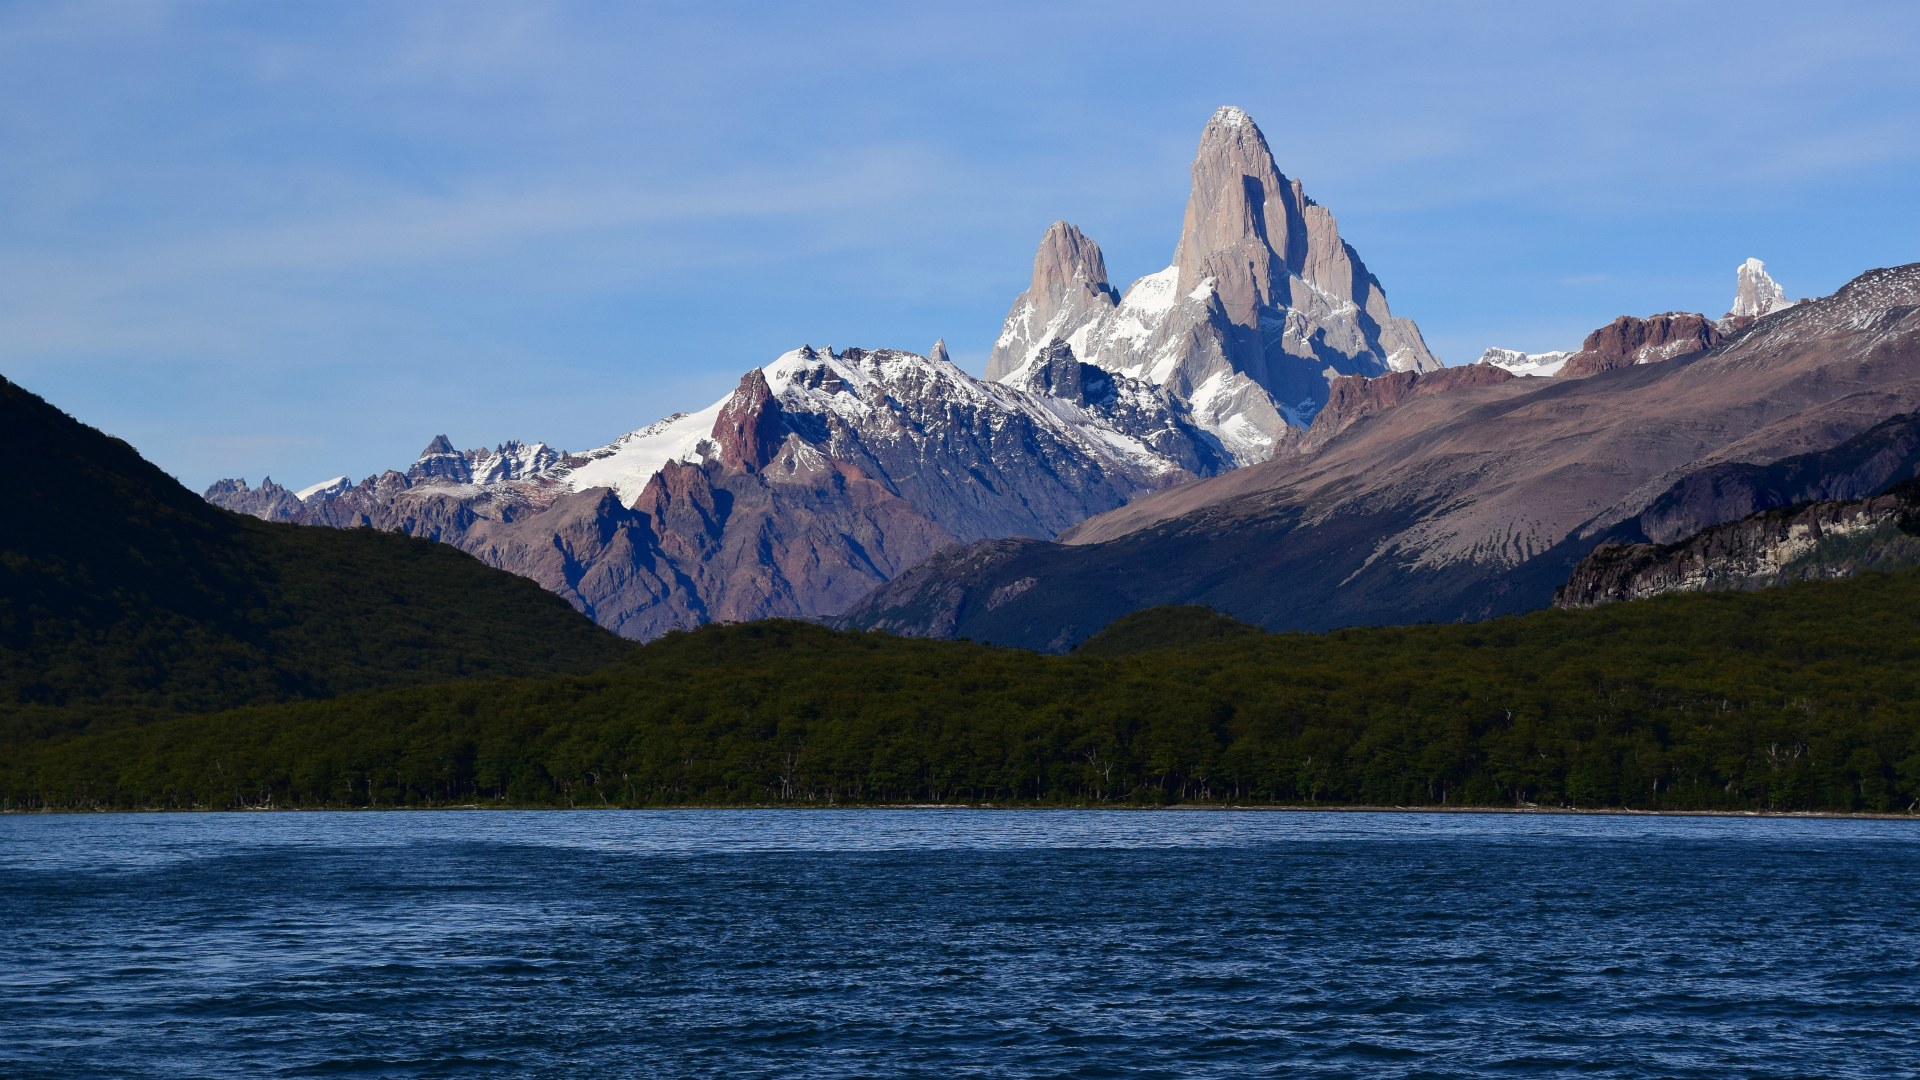 Mt Fitzroy and Lago del Desierto, Los Glaciares National Park